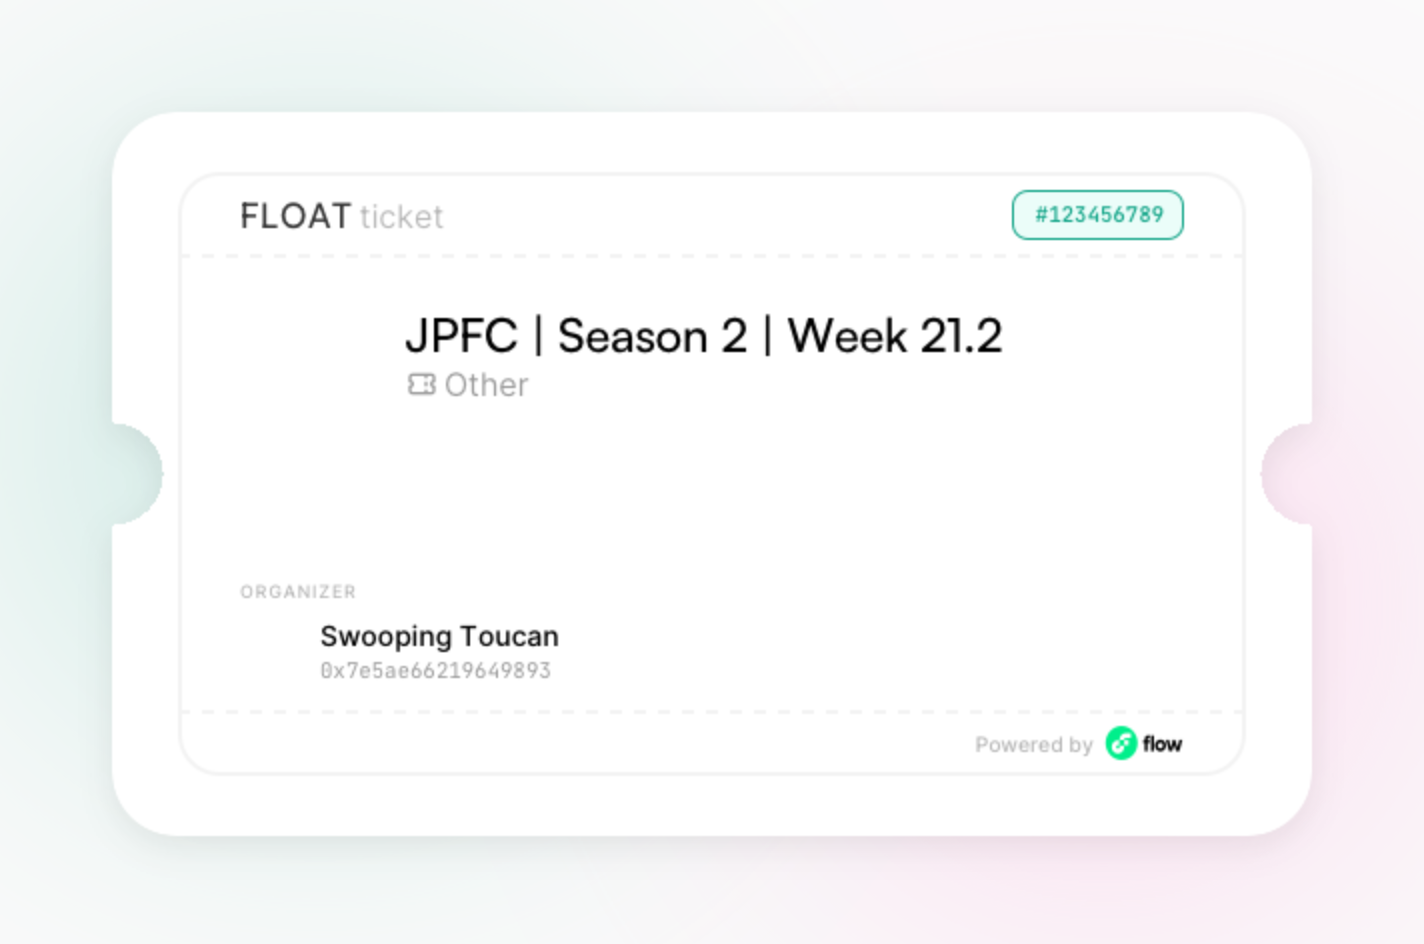 JPFC | Season 2 | Week 21.2 asset